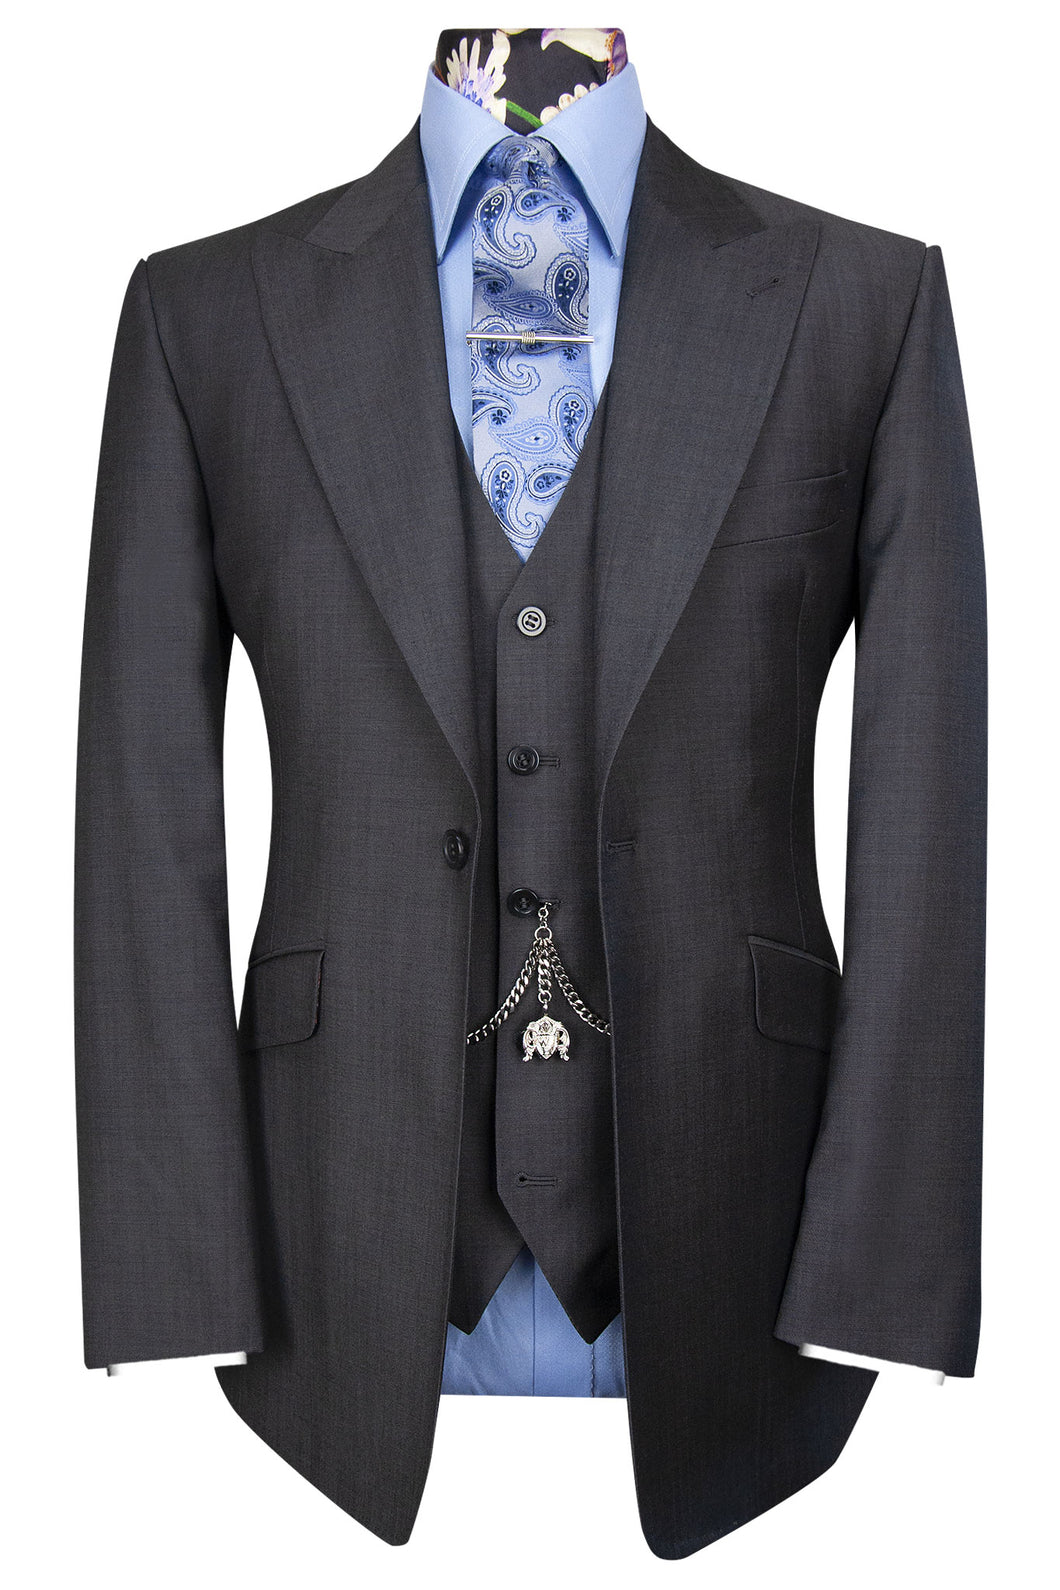 The Demetrius Graphite Grey Classic Suit